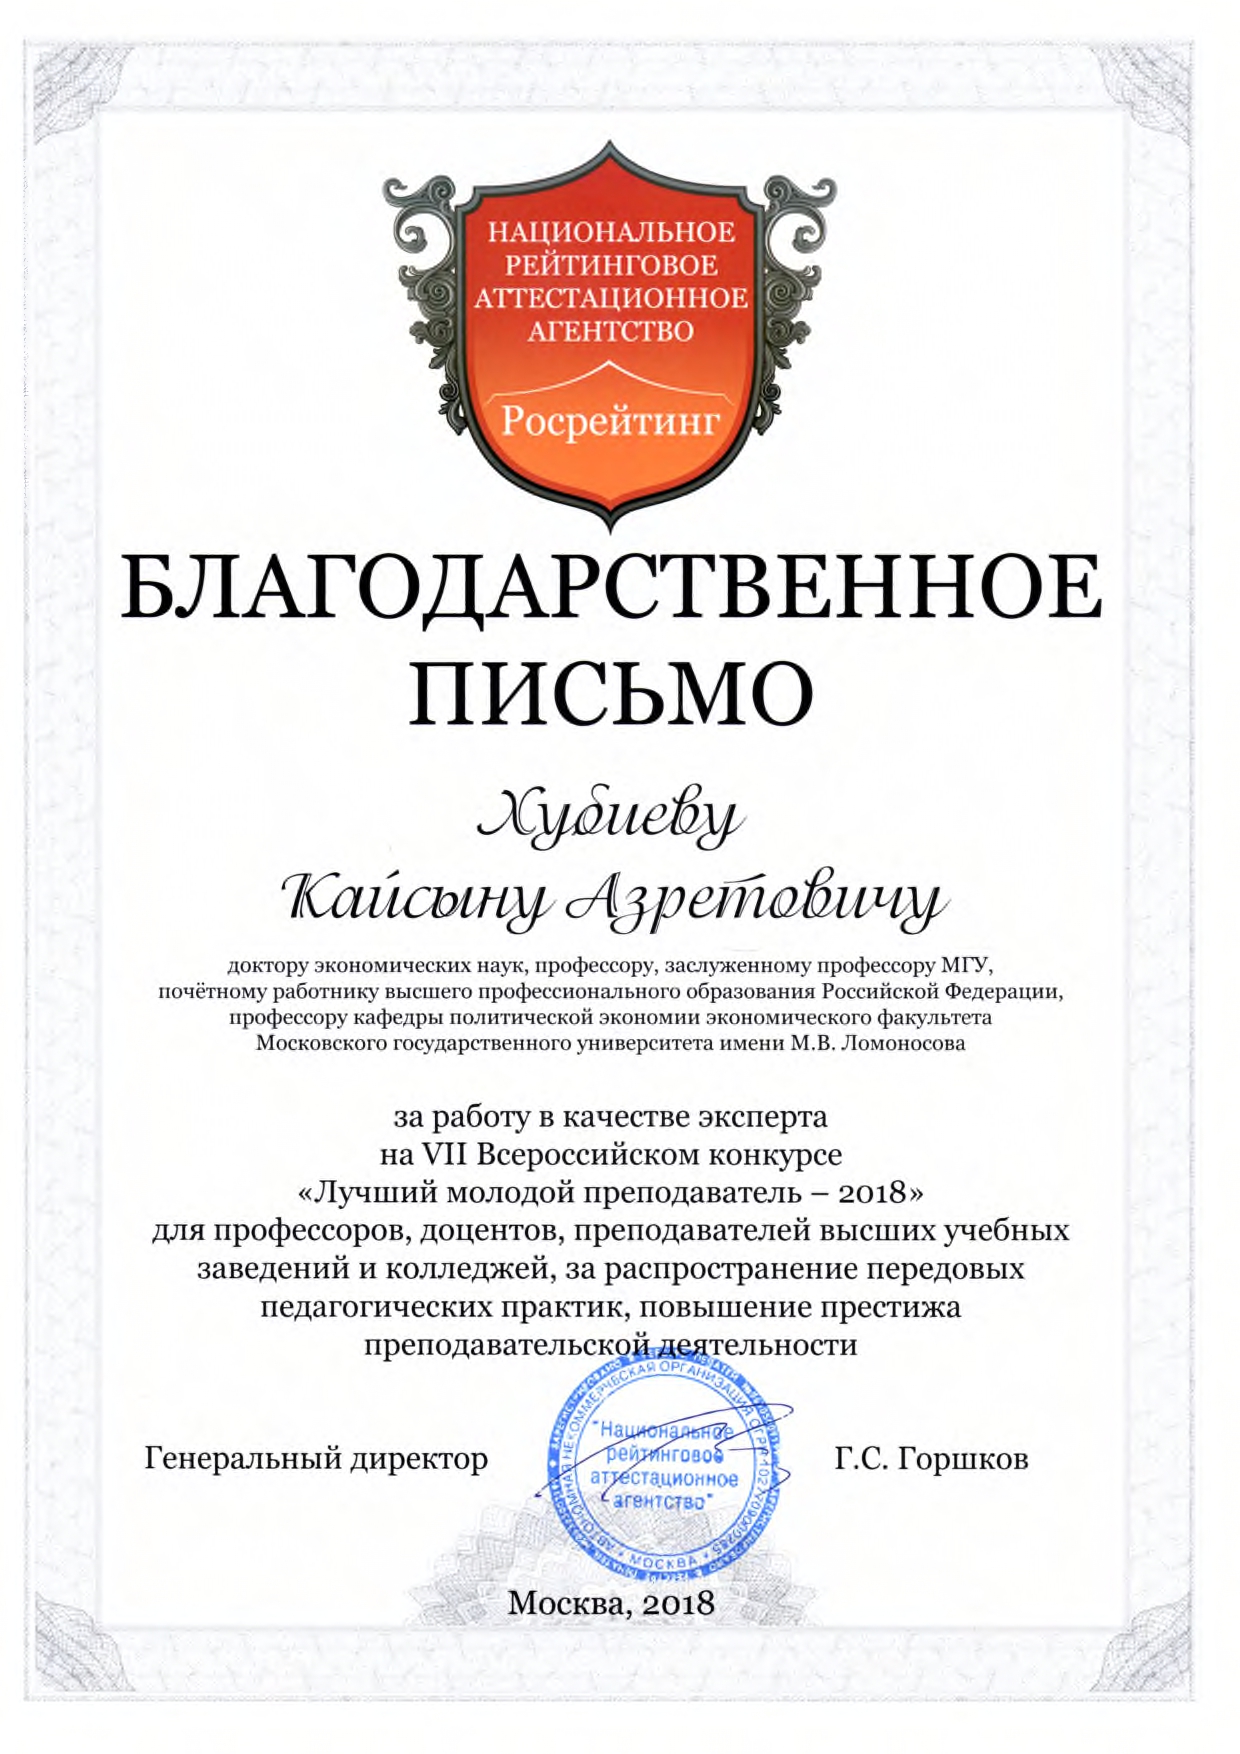 Благодарность проф. Хубиеву К.А. от Национального рейтингового аттестационного агенства